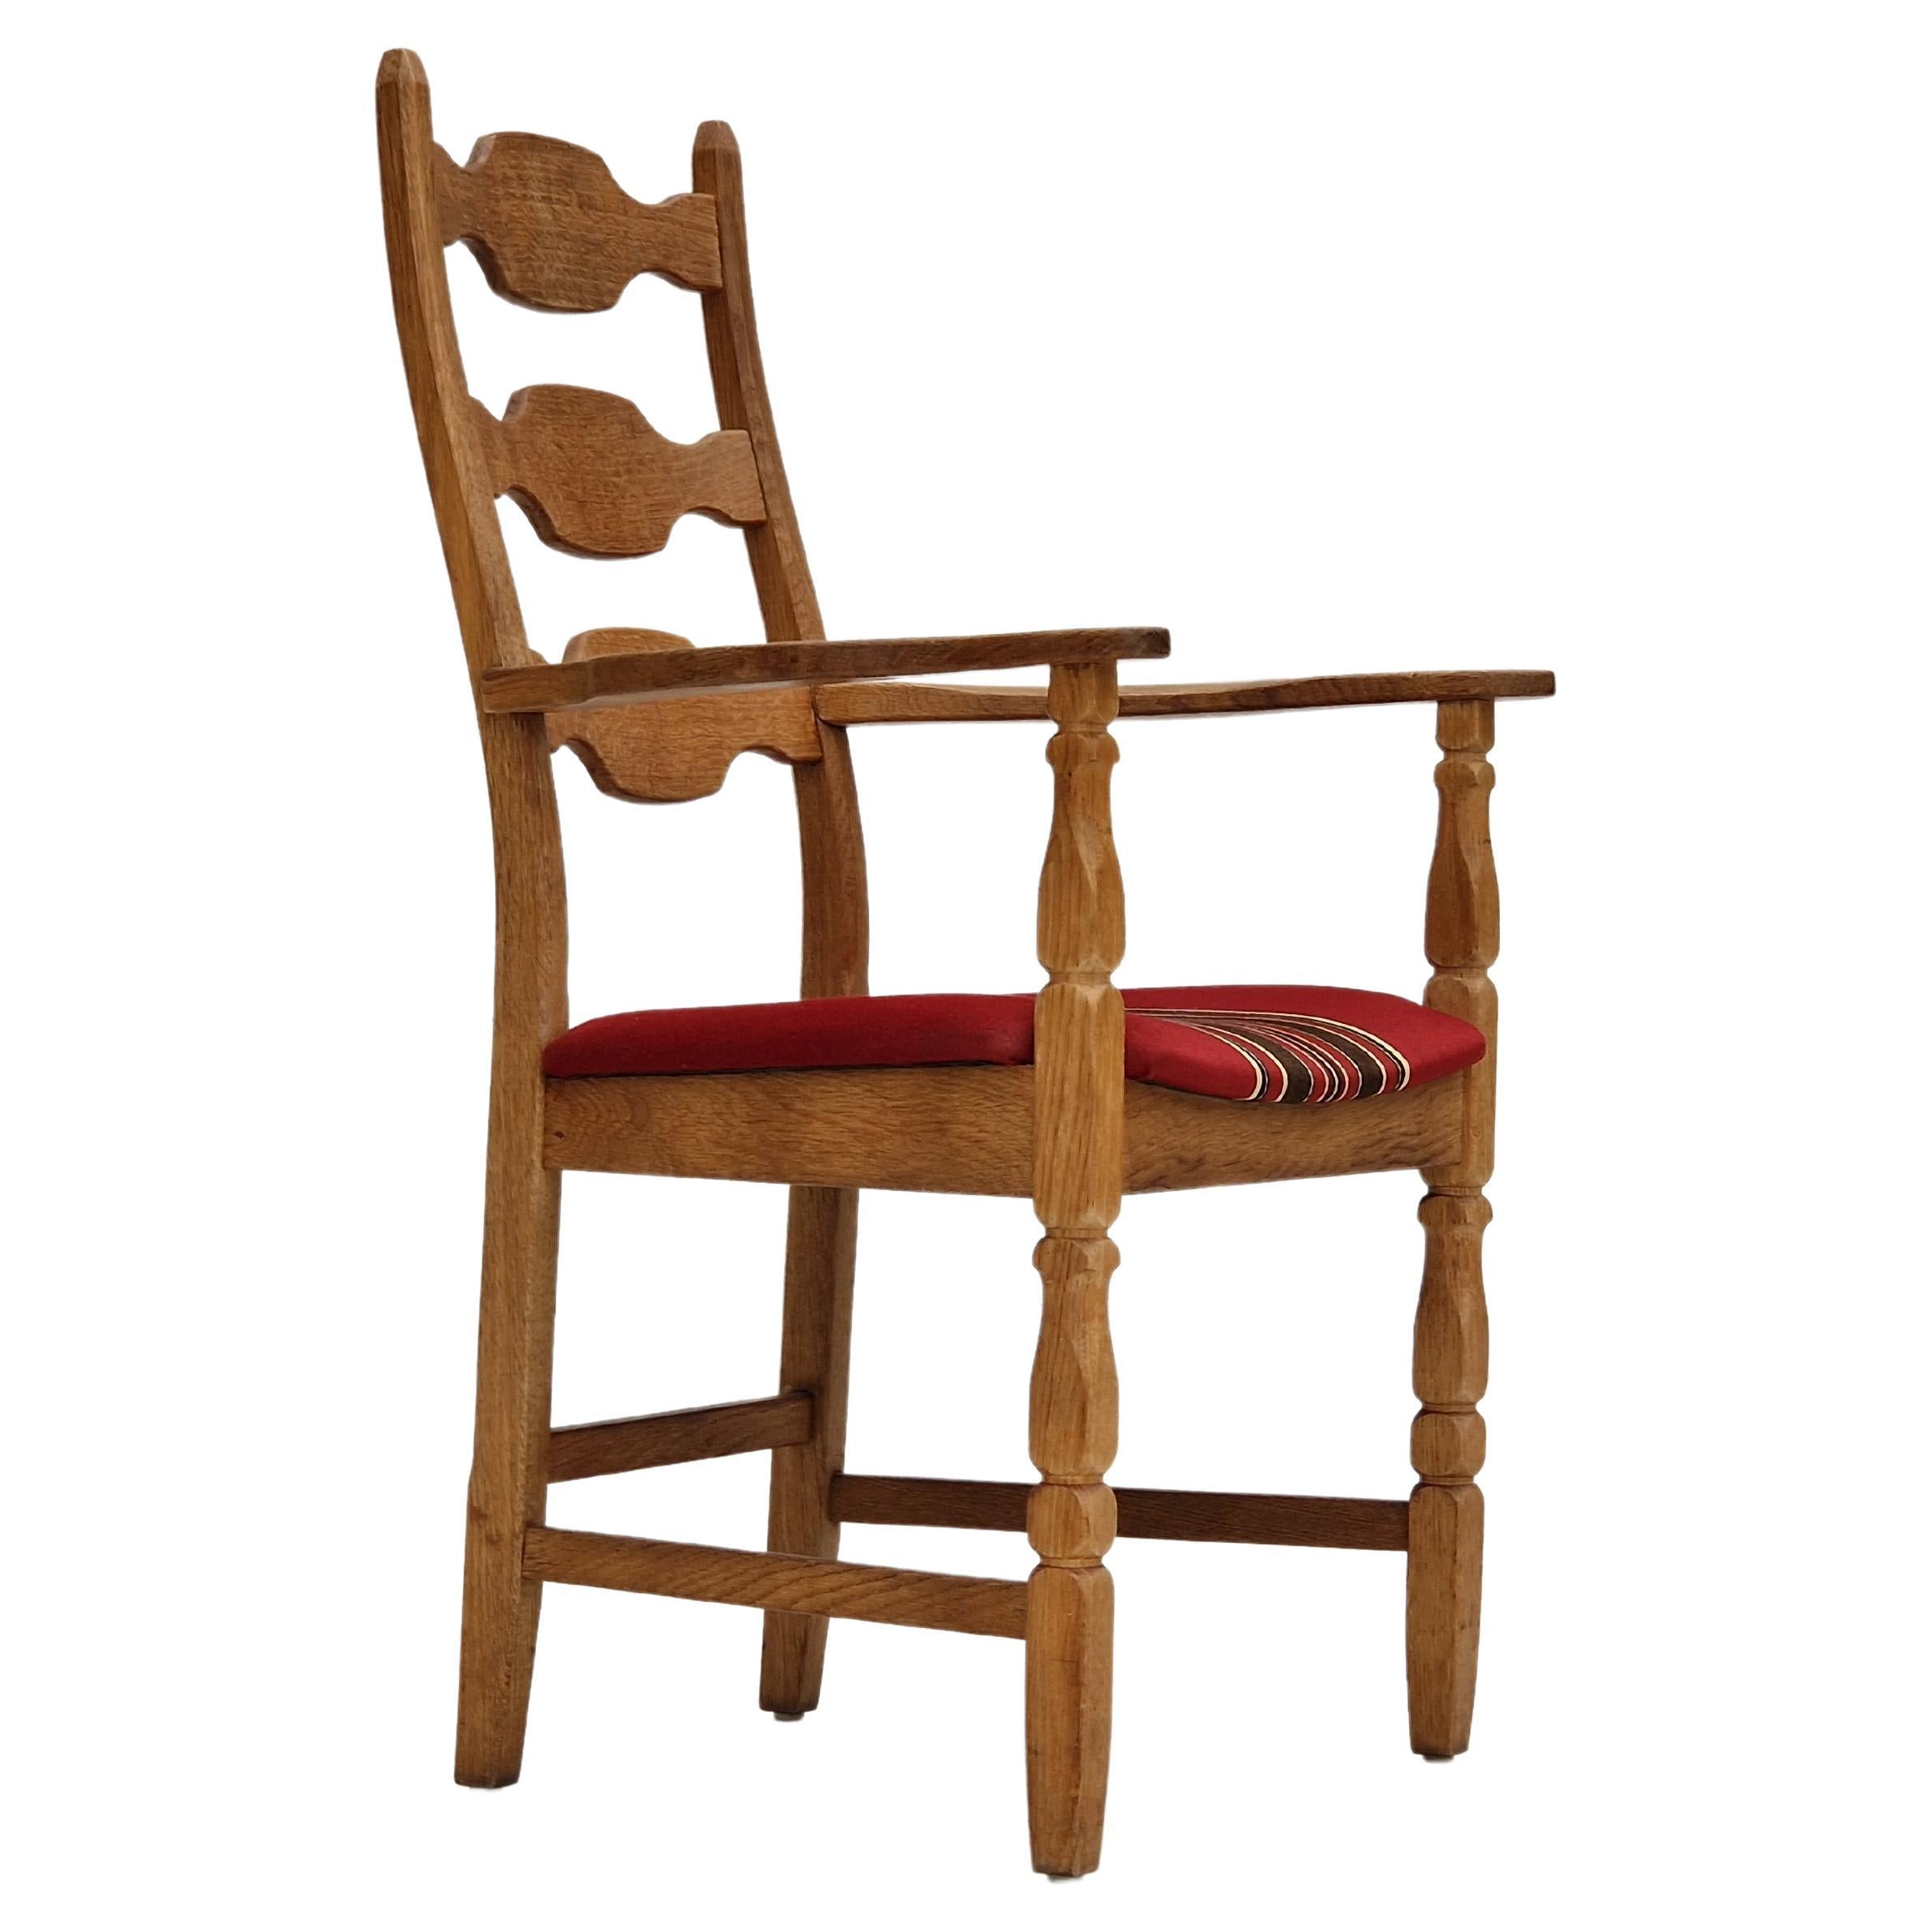 1960s, Danish design, fauteuil, bois de chêne, meubles en laine.